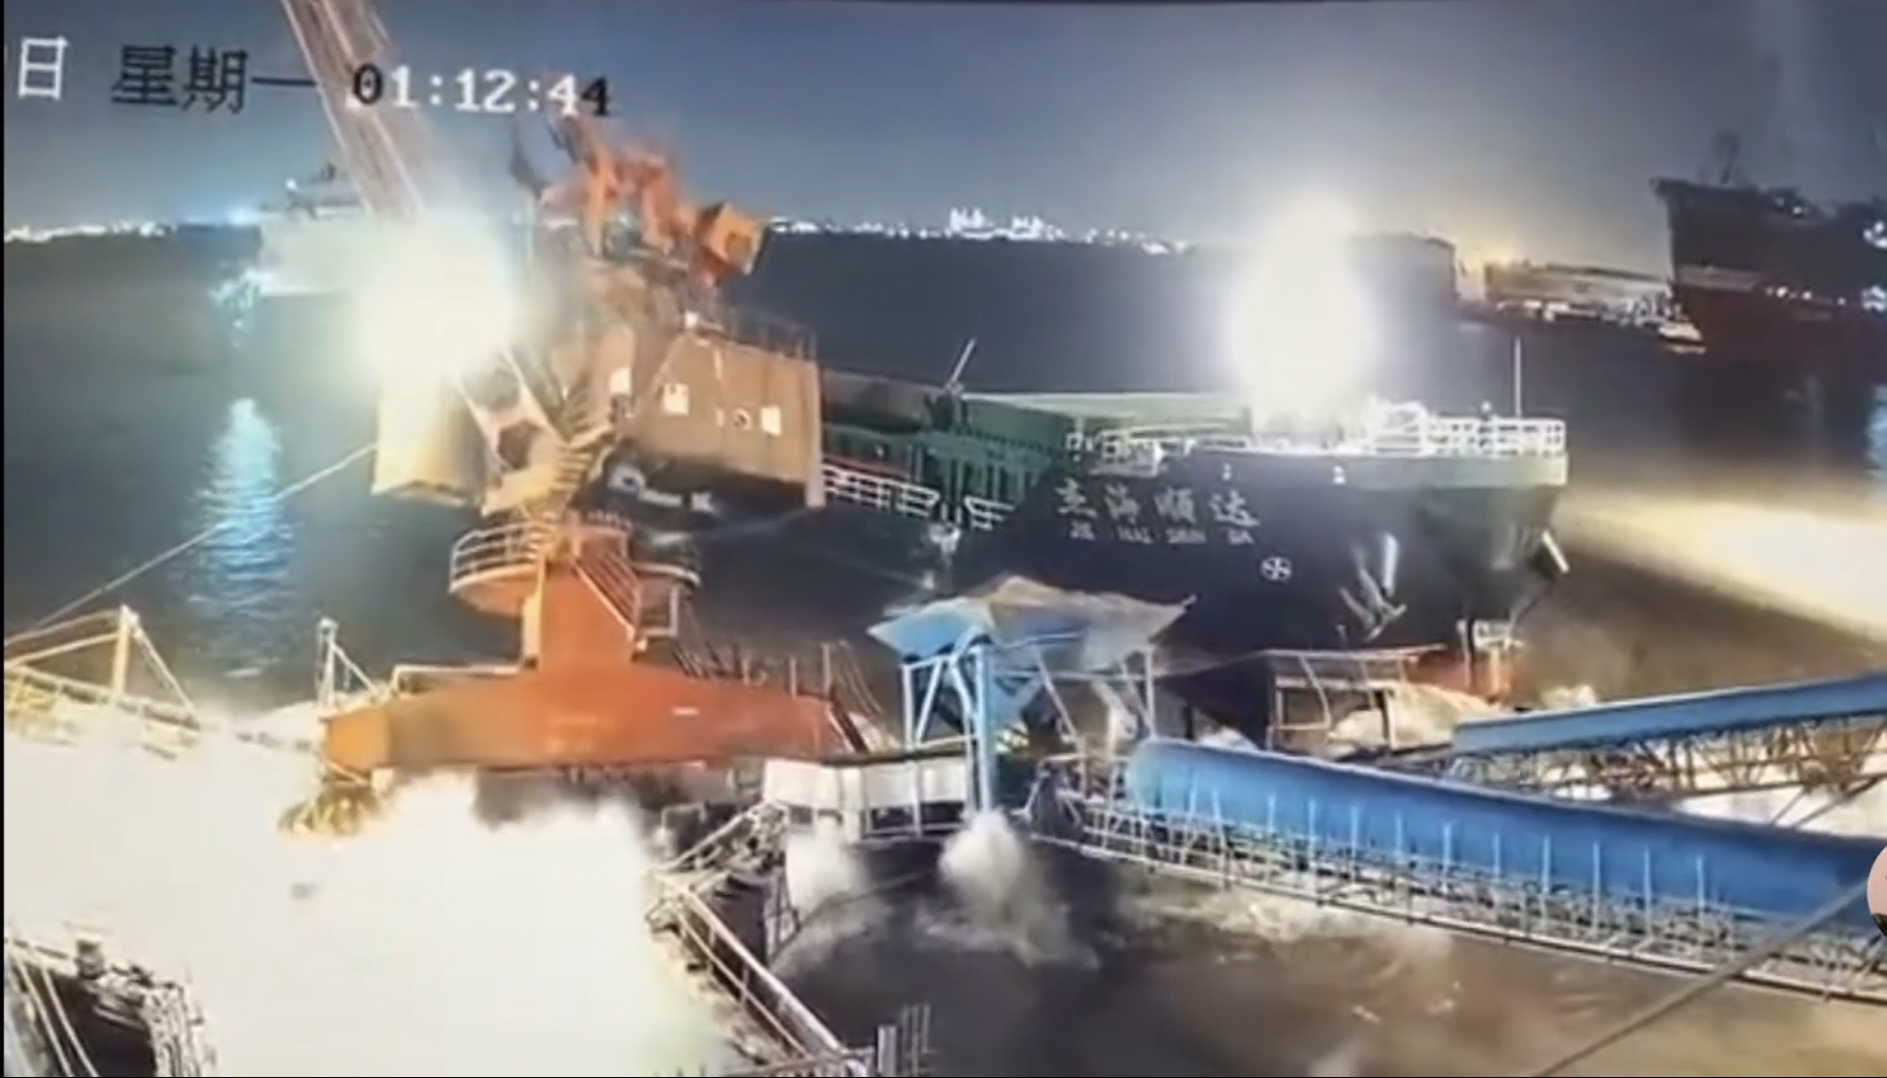 上海一货船碰撞码头吊机落水 事故未造成人员伤亡和水域污染